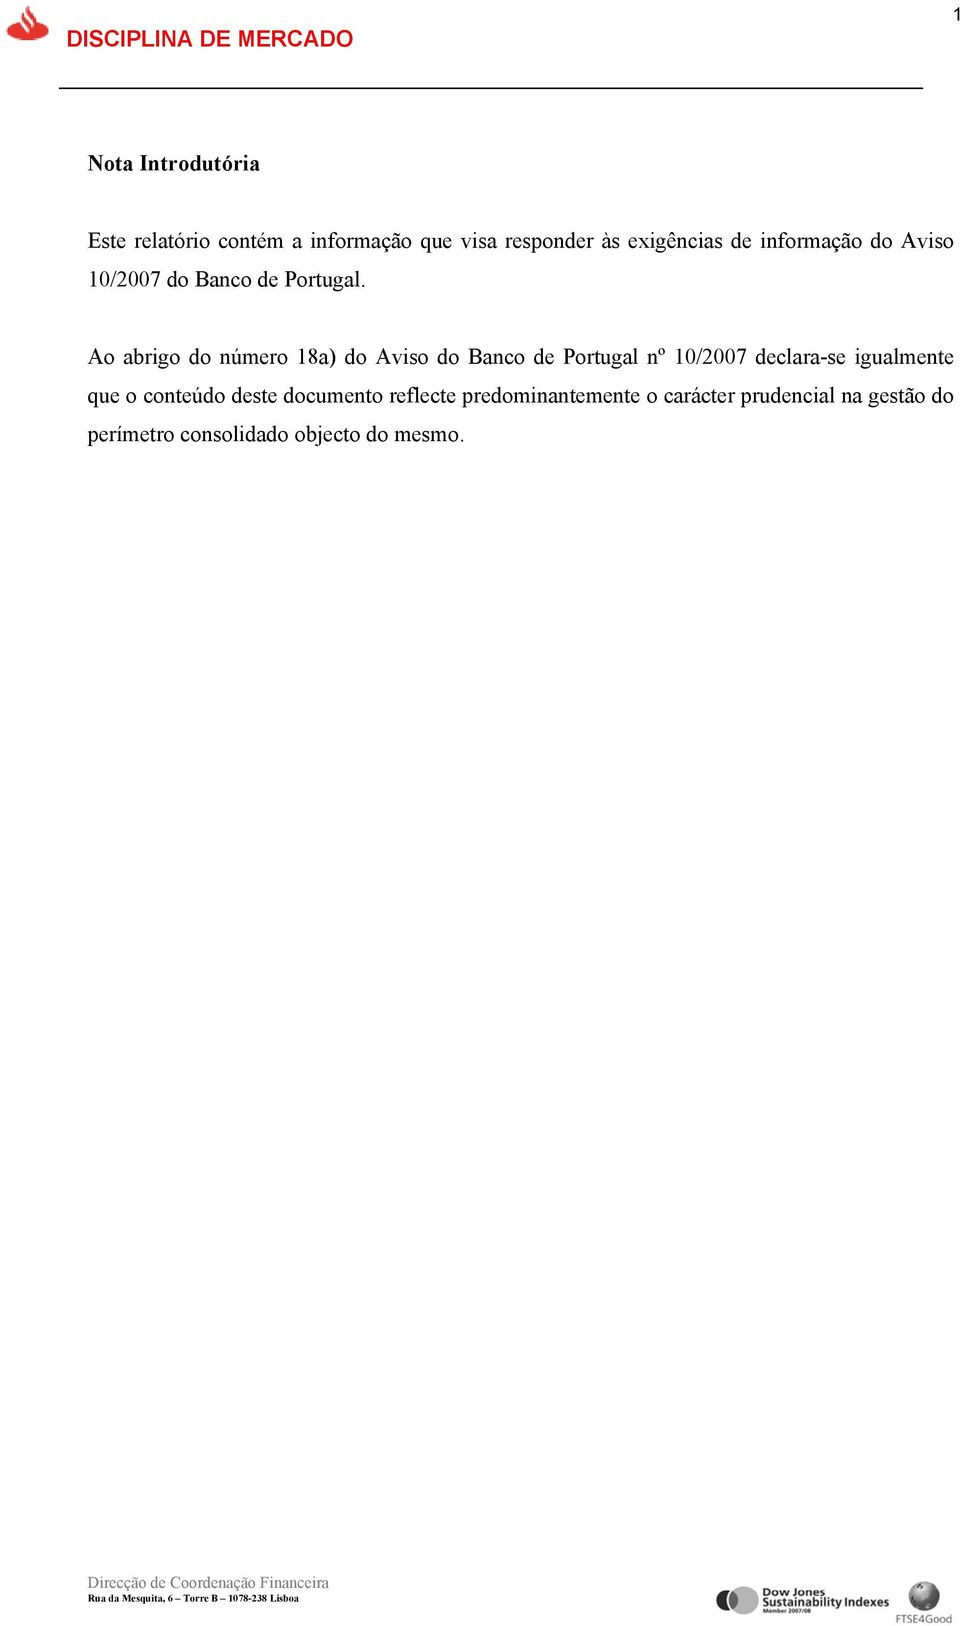 Ao abrigo do número 18a) do Aviso do Banco de Portugal nº 10/2007 declara-se igualmente